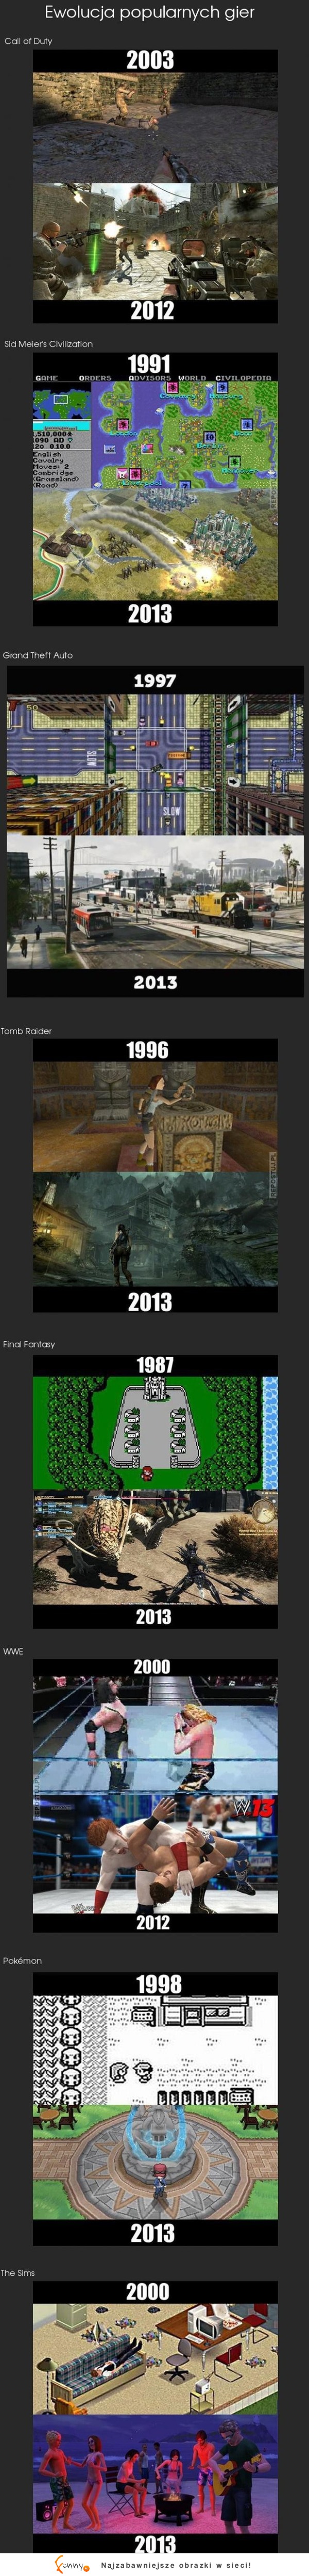 Ewolucja popularnych gier! GTA i COD najlepsze! :D